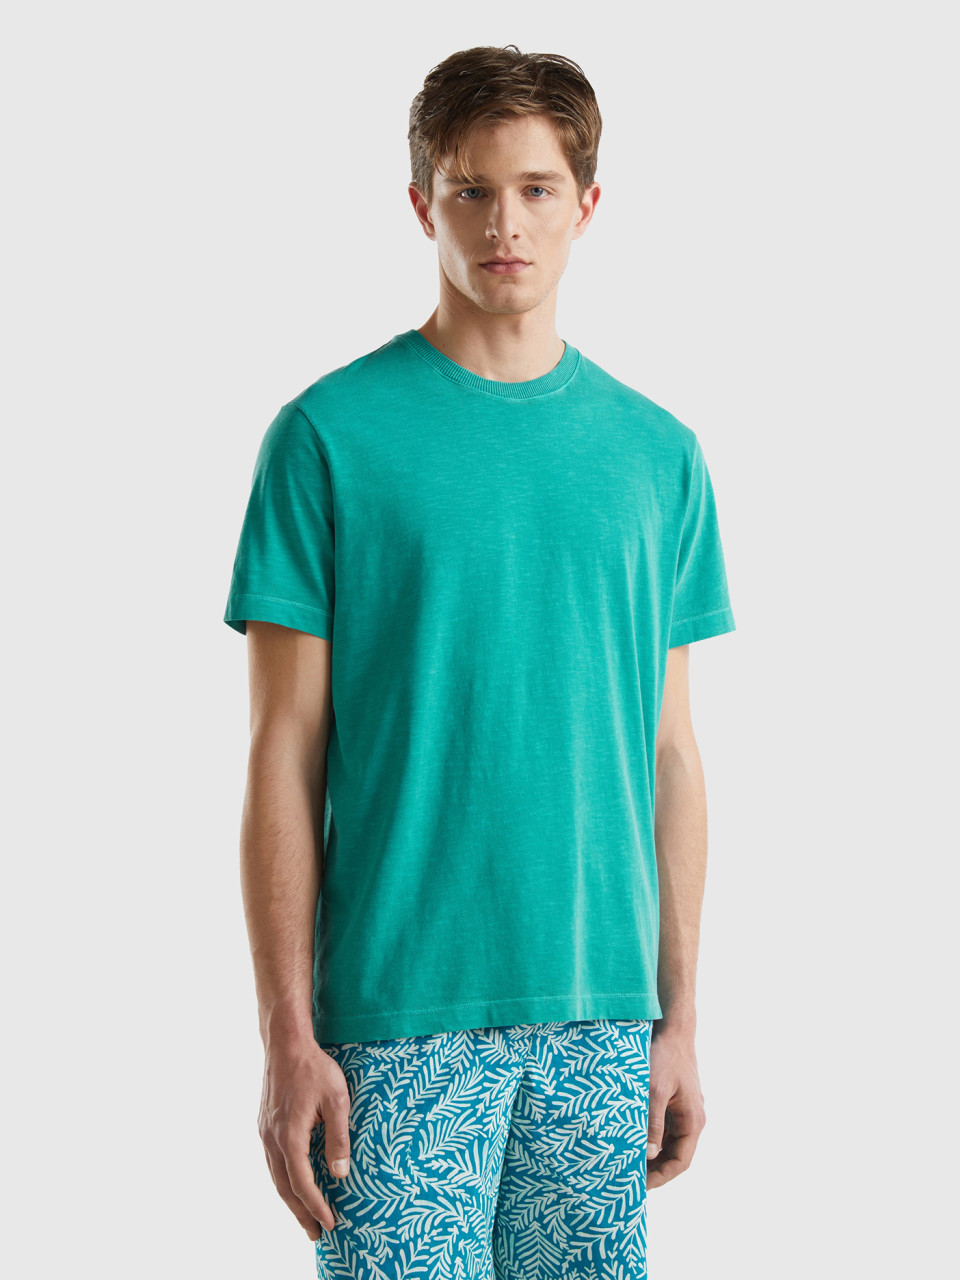 Benetton, Lightweight Relaxed Fit T-shirt, Green, Men